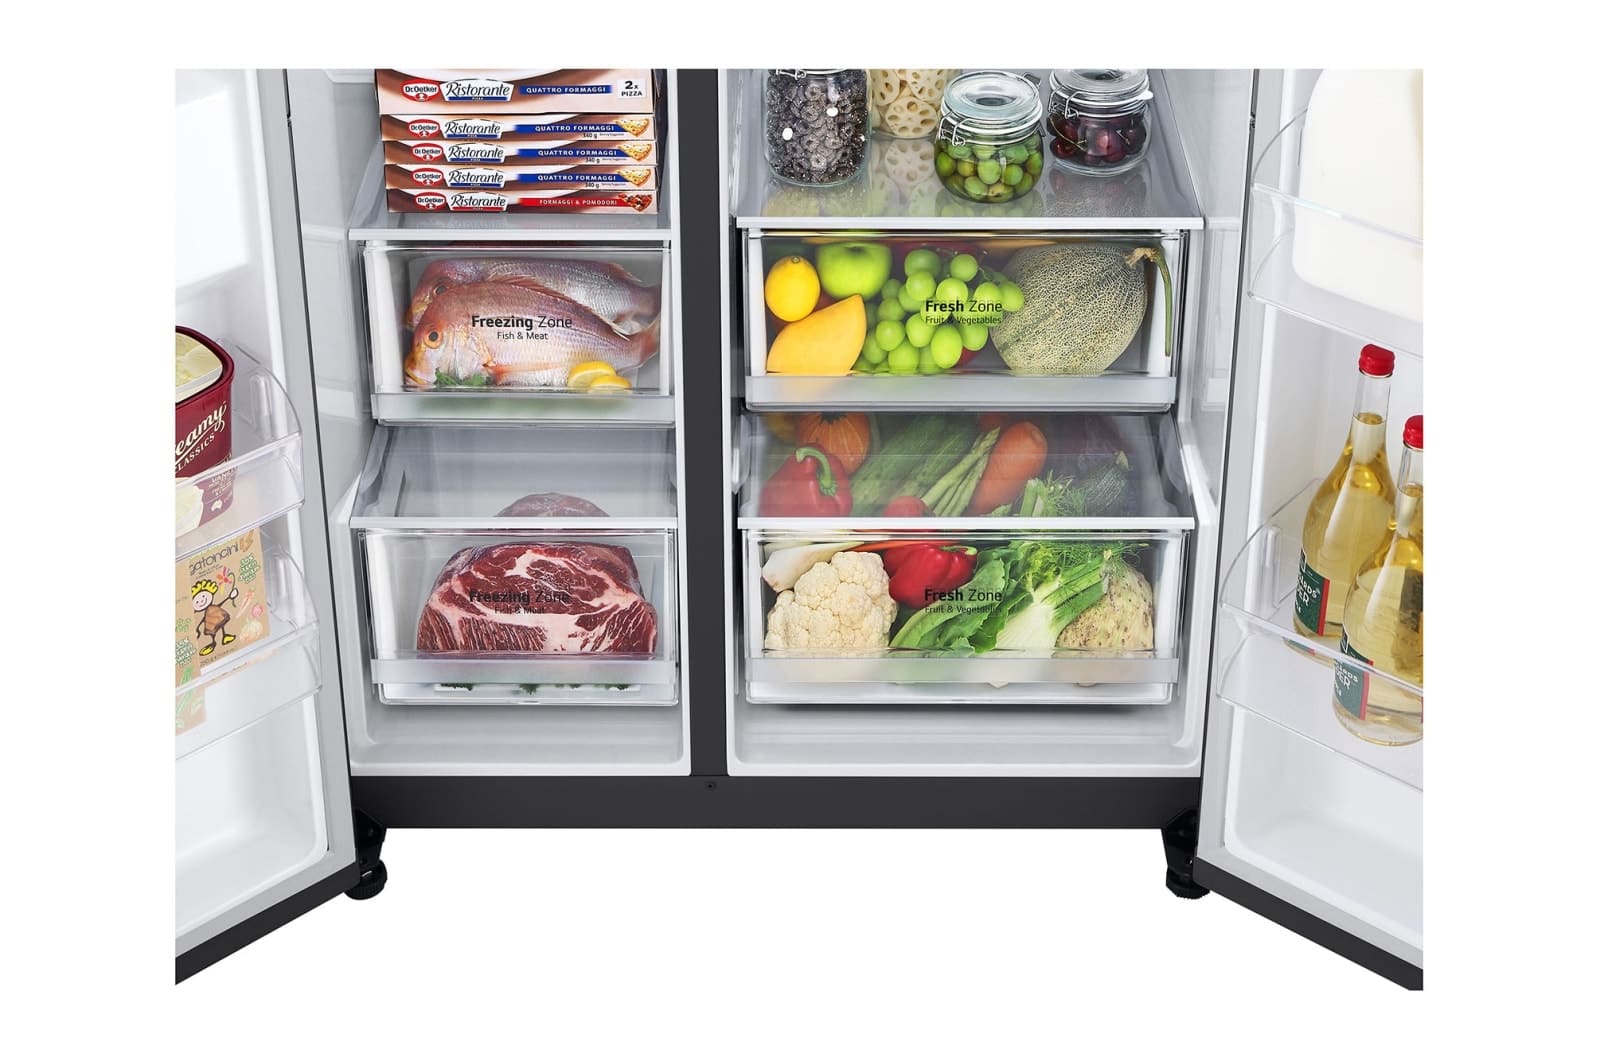 LG-694L-Side-by-side-fridge-4.jpg